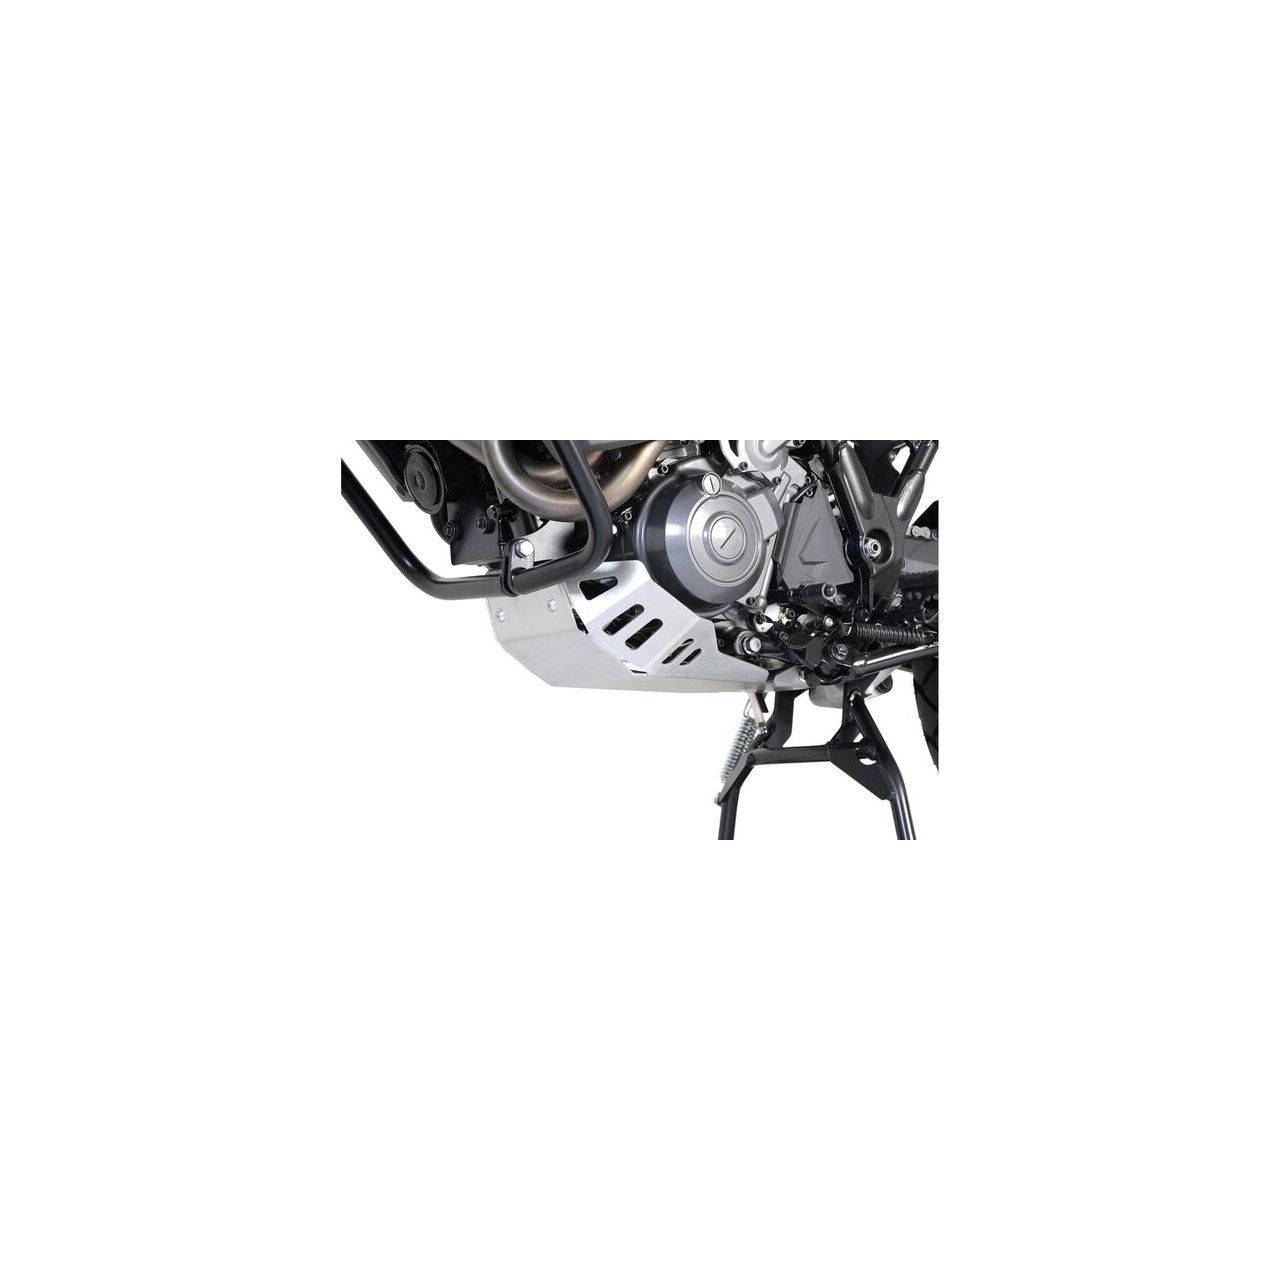 SW MOTECH Sabot moteur en aluminium XT 660 Z